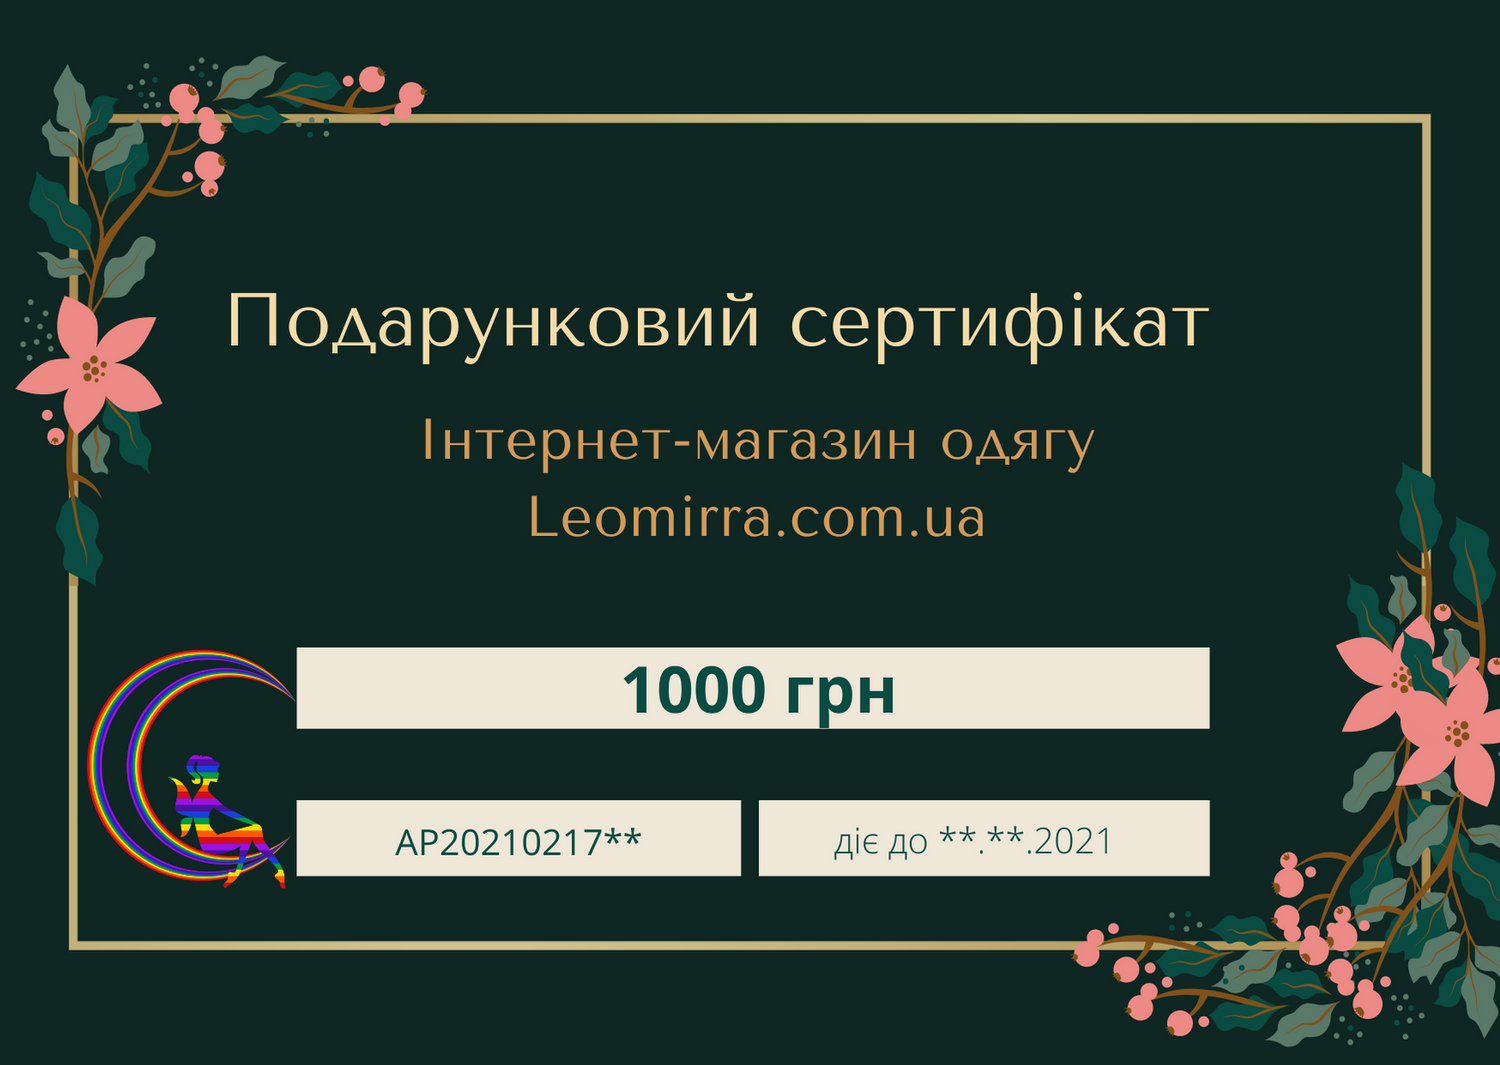 Подарунковий сертифікат на 1000 грн! - фото